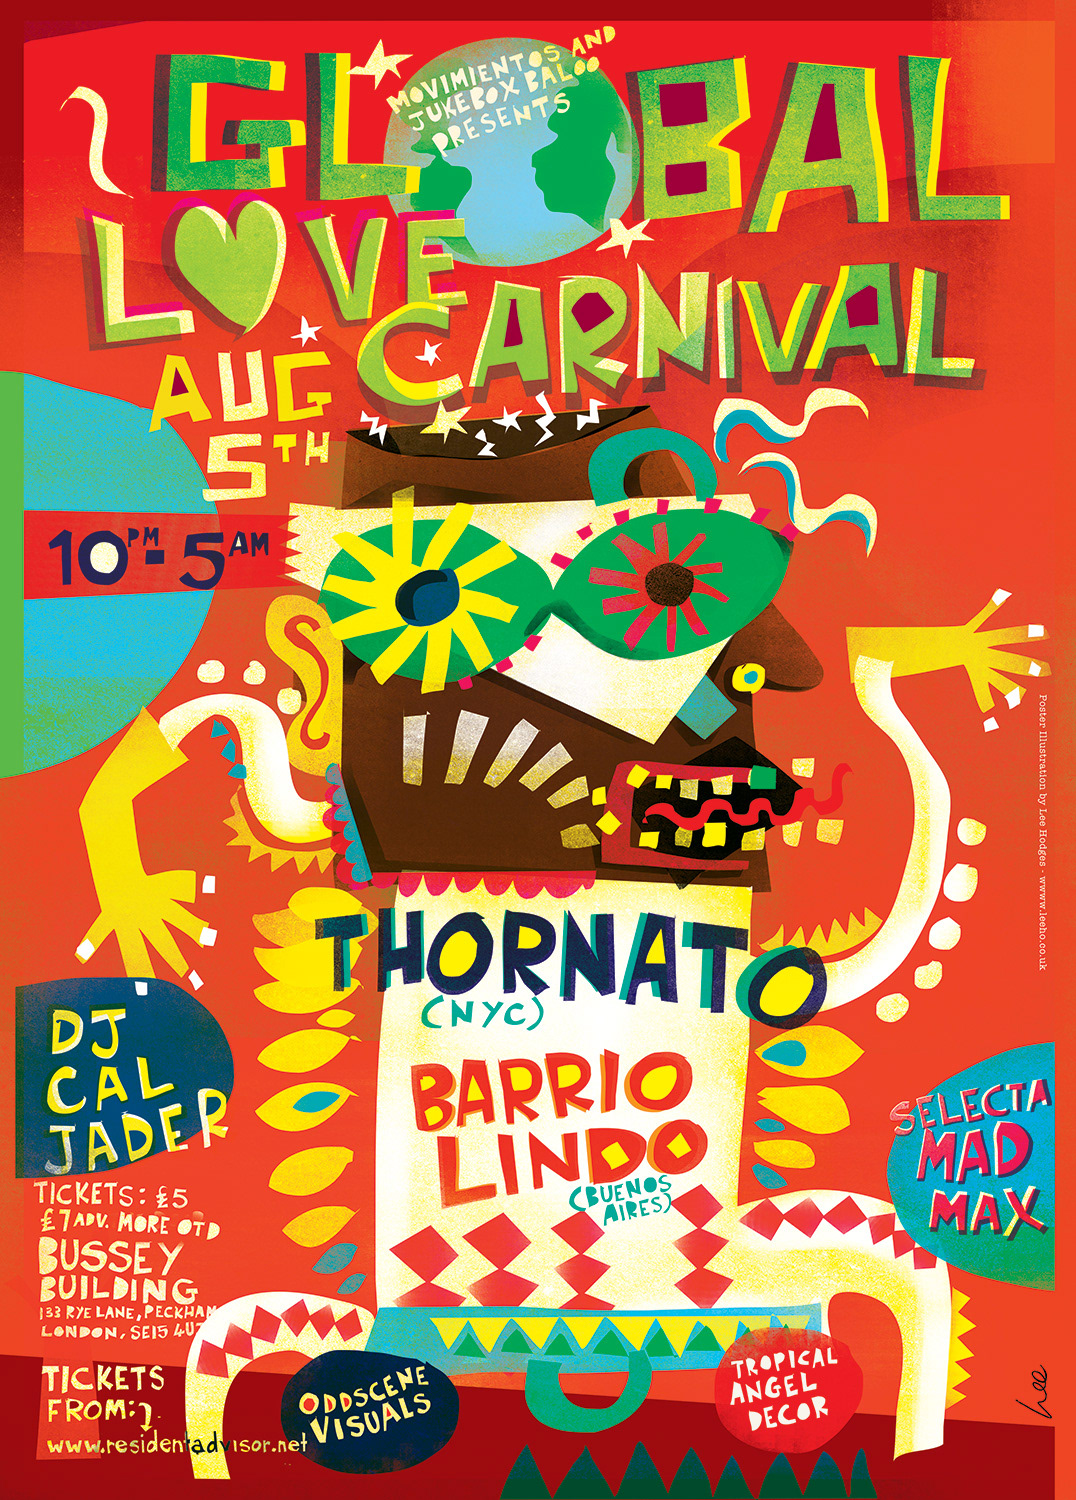 Adobe Portfolio love carnival gigs London Tropical